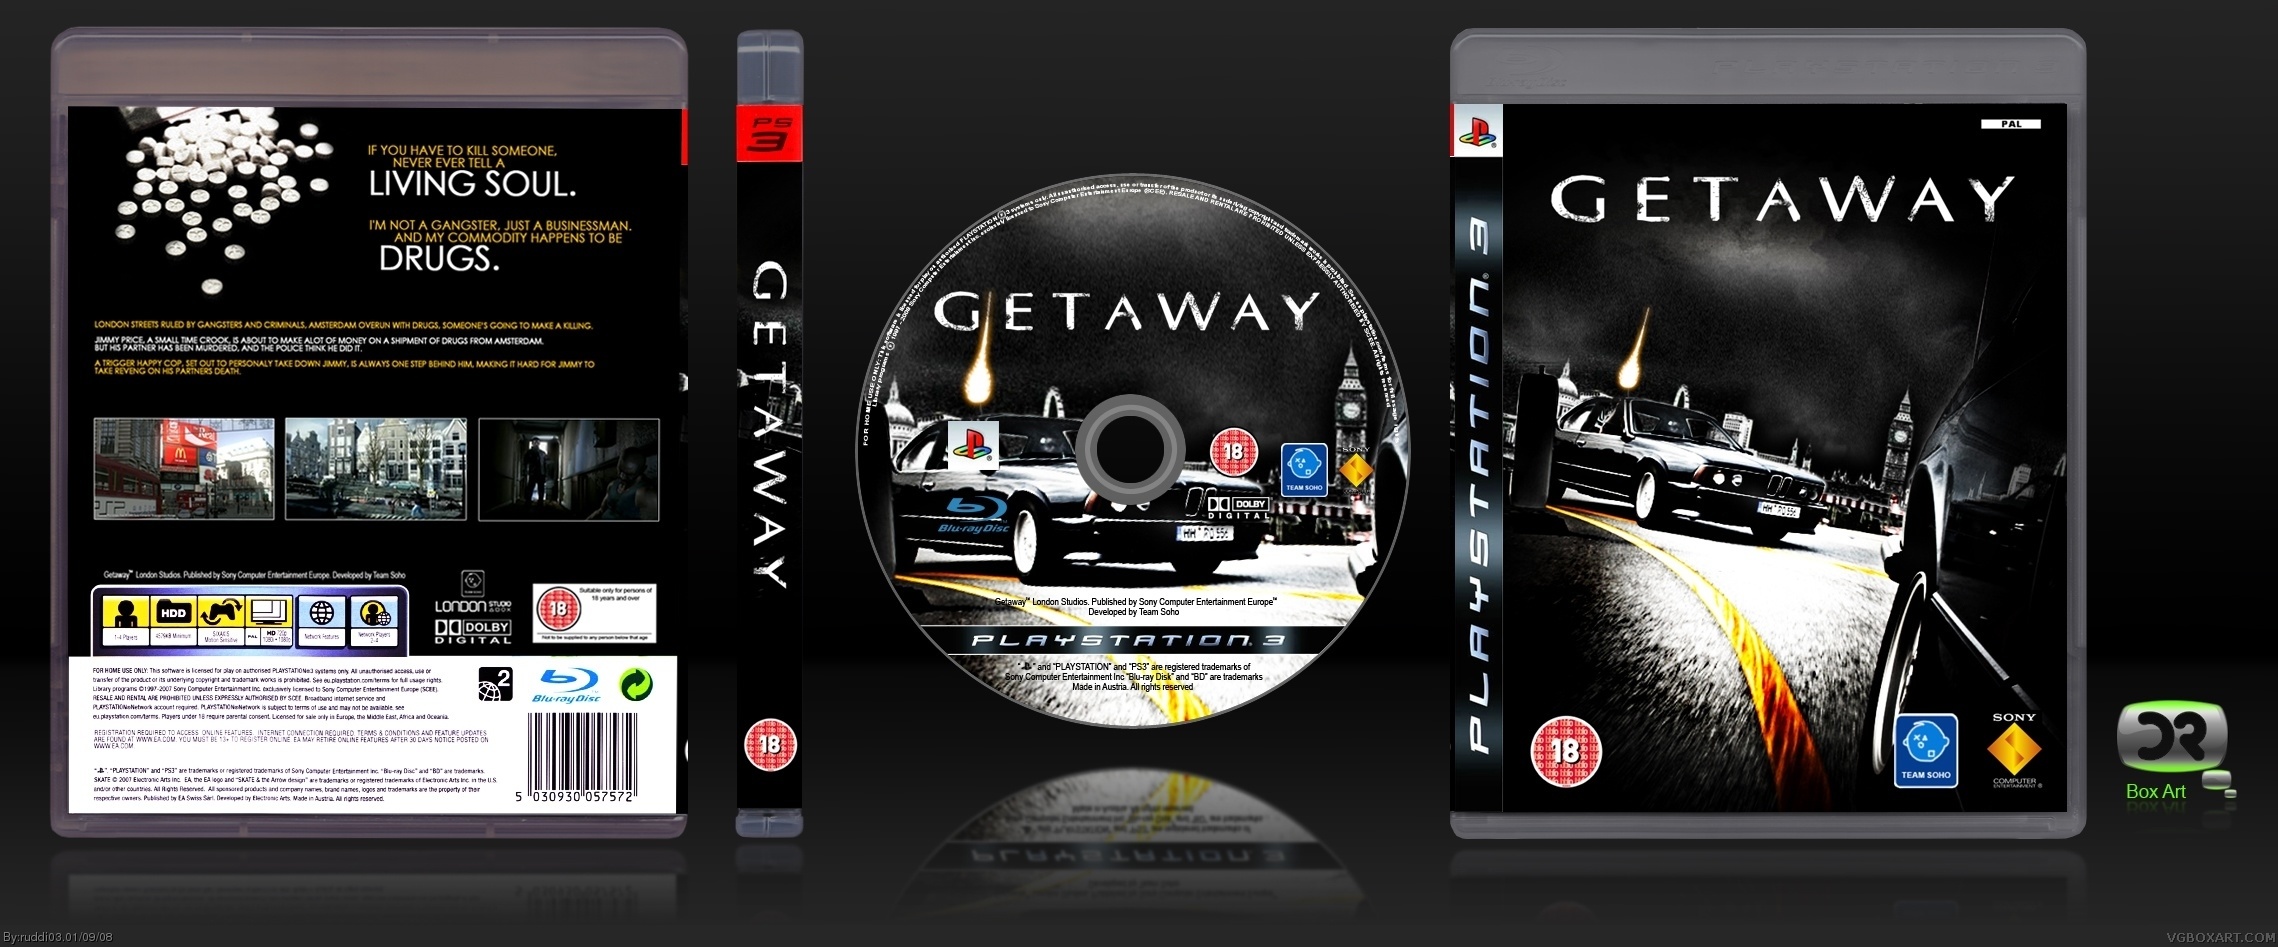 Getaway box cover